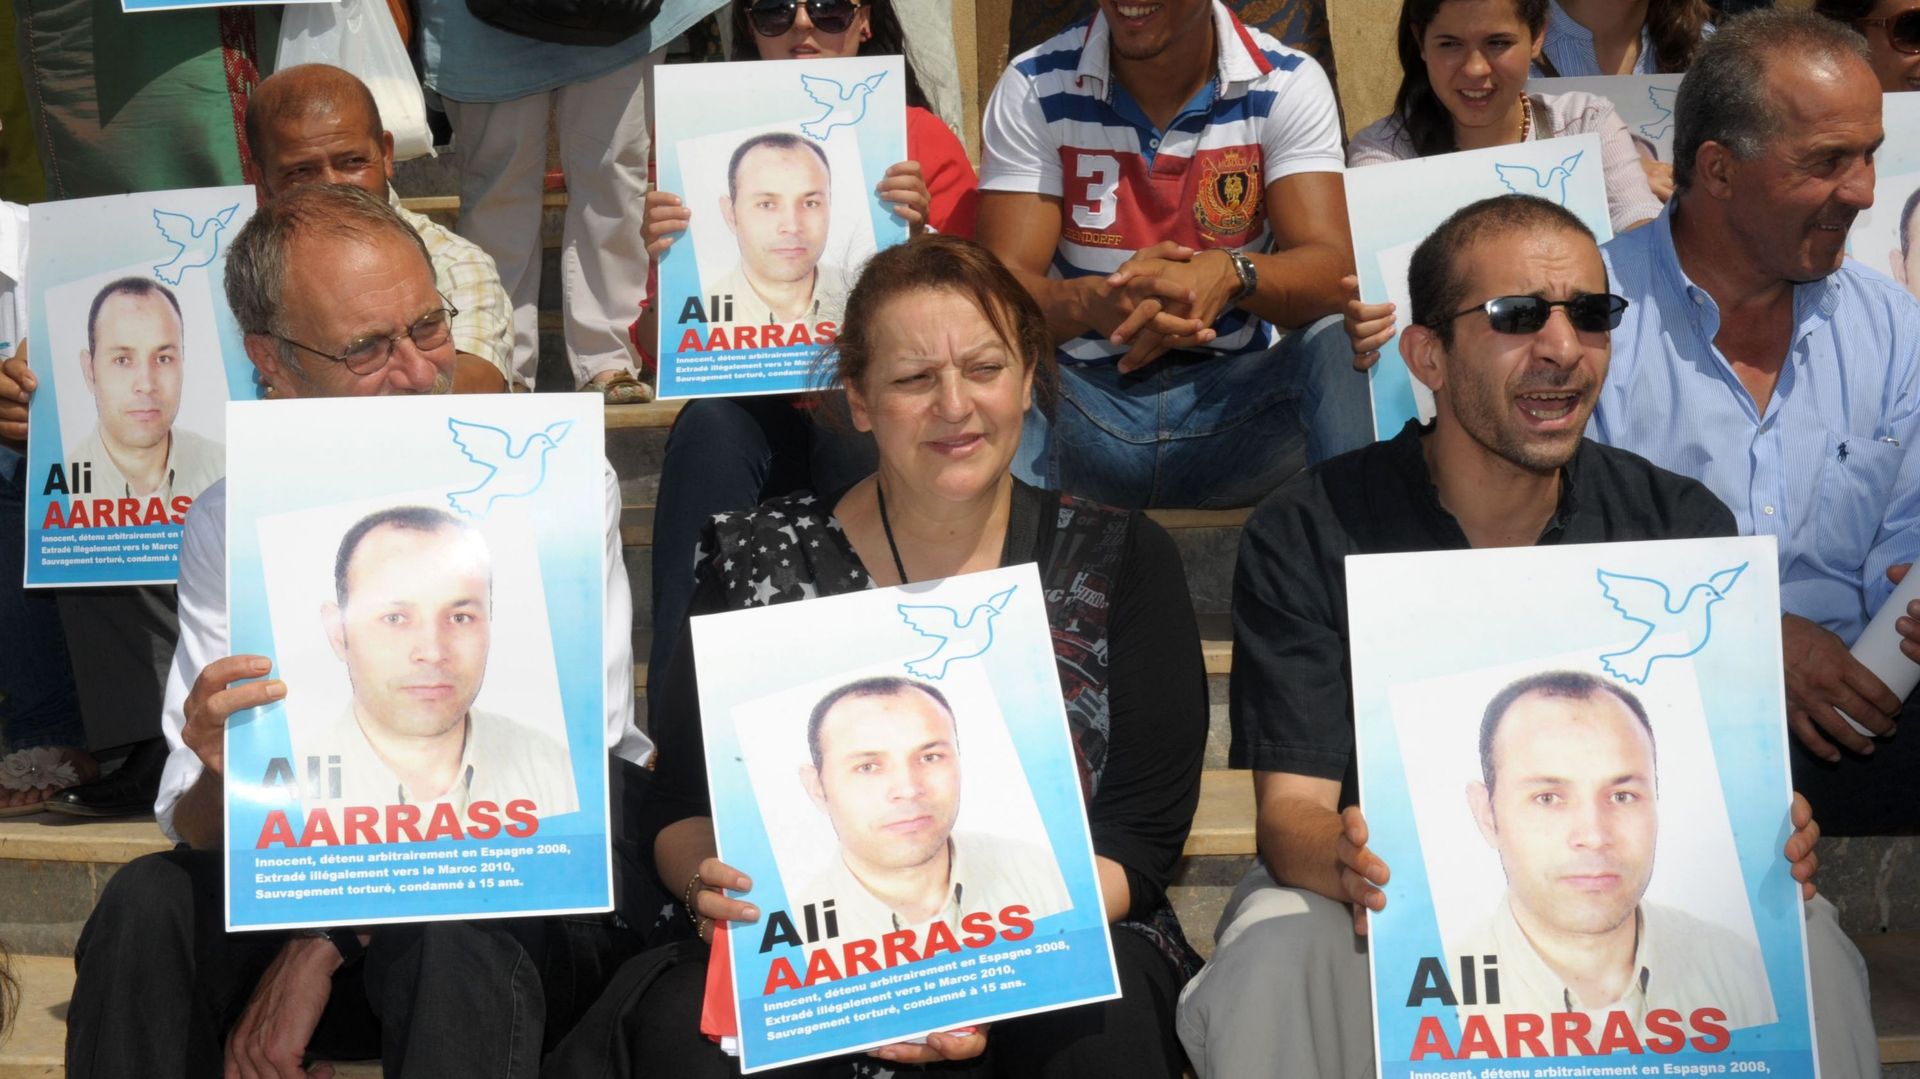 "Un rapport des Nations-Unies confirme qu'il a été torturé", rappelle Alexis Deswaef